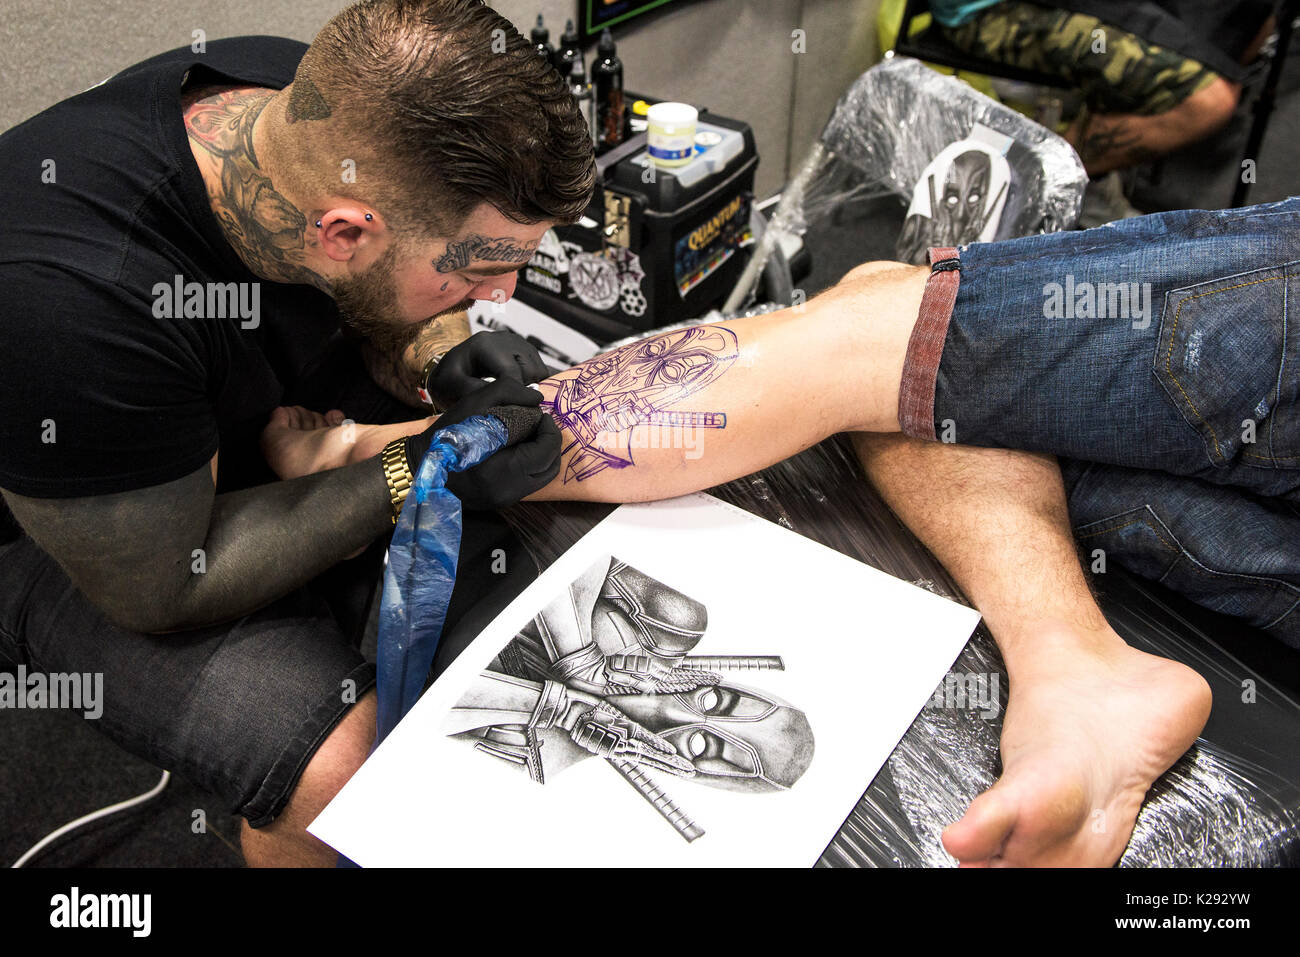 Cornovaglia Tattoo Convention - Luca Rudden tatuaggio un disegno sulla gamba di un cliente fmale a Cornwall Tattoo Convention. Foto Stock